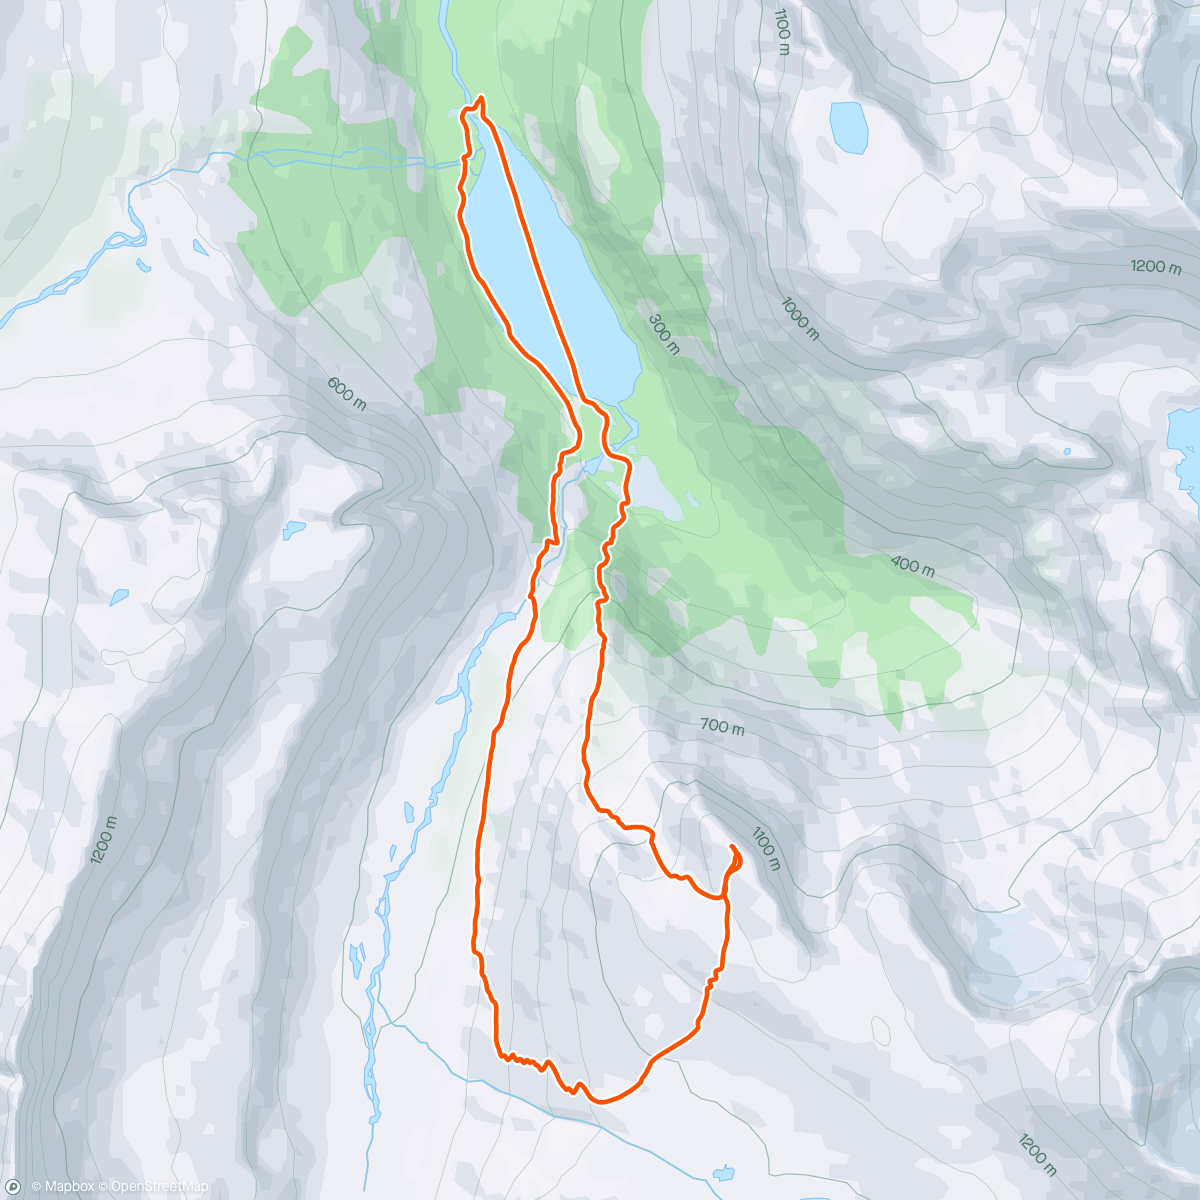 Map of the activity, Nihkecohkka och ner Nikeryggen